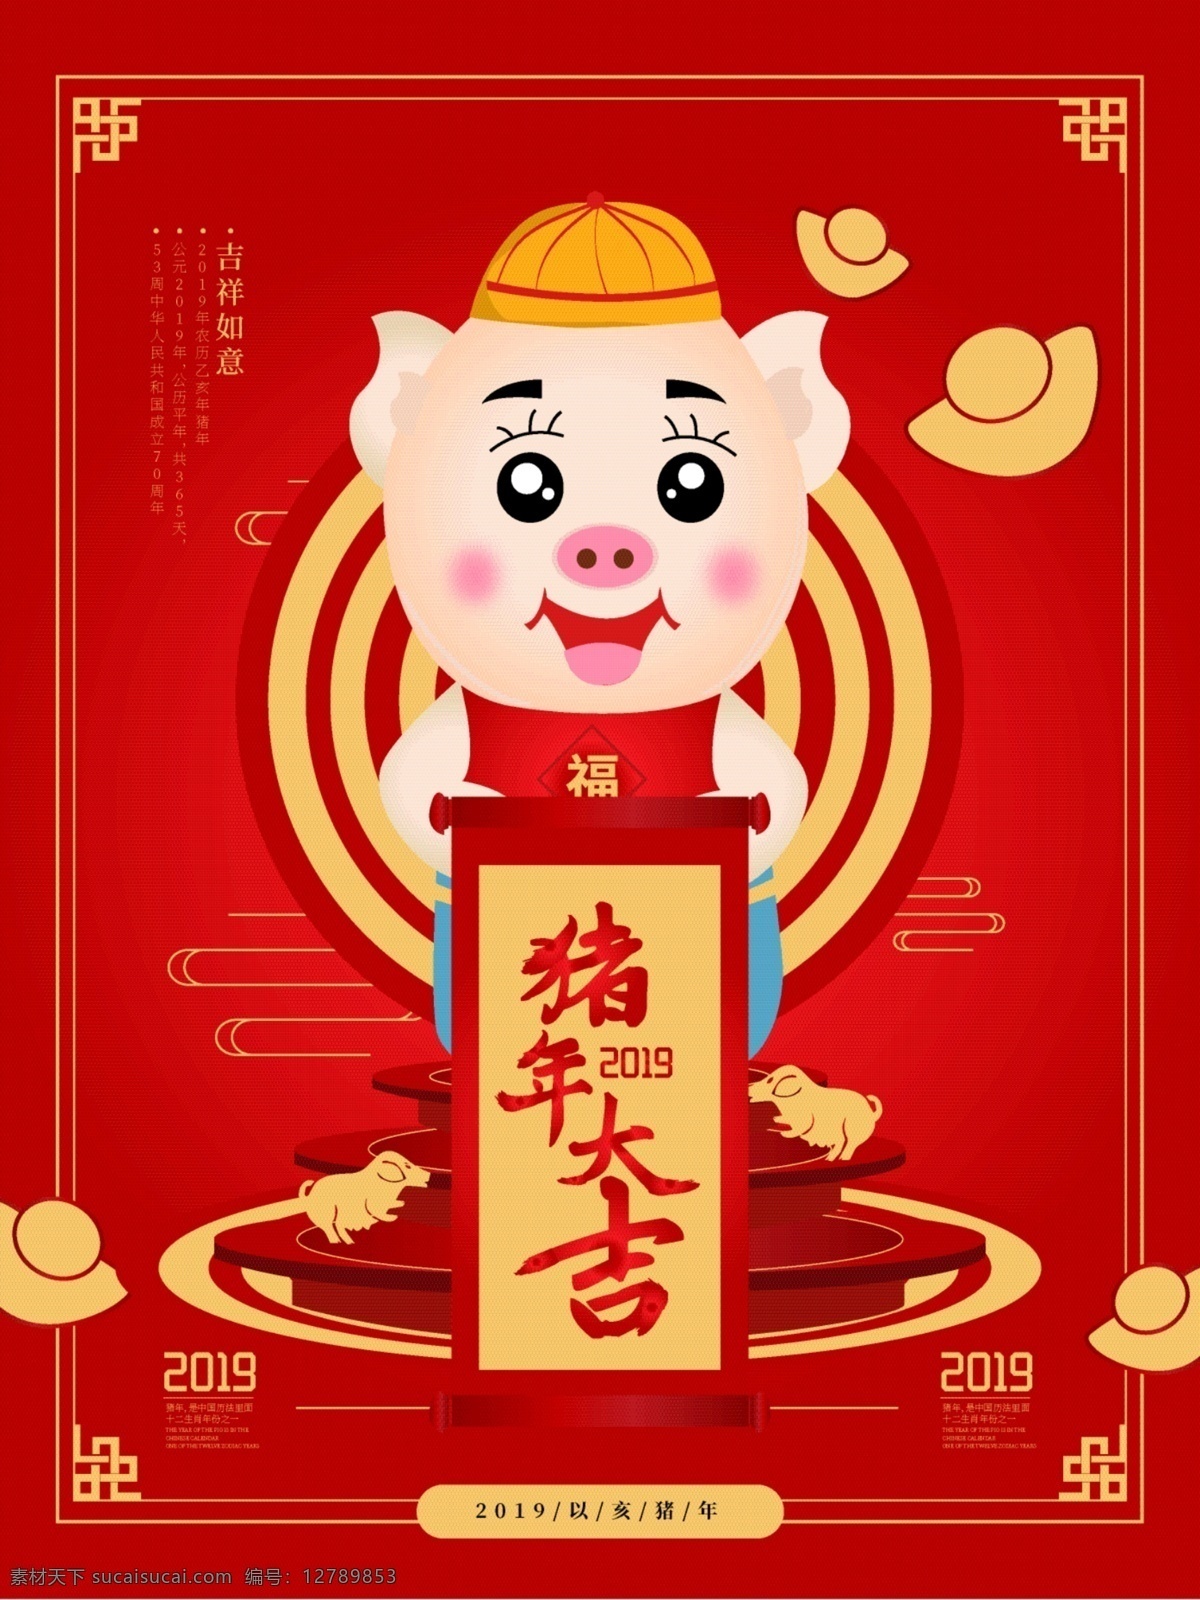 原创 手绘 猪年 大吉 海报 猪年宣传海报 2019 新年 元宝 可爱